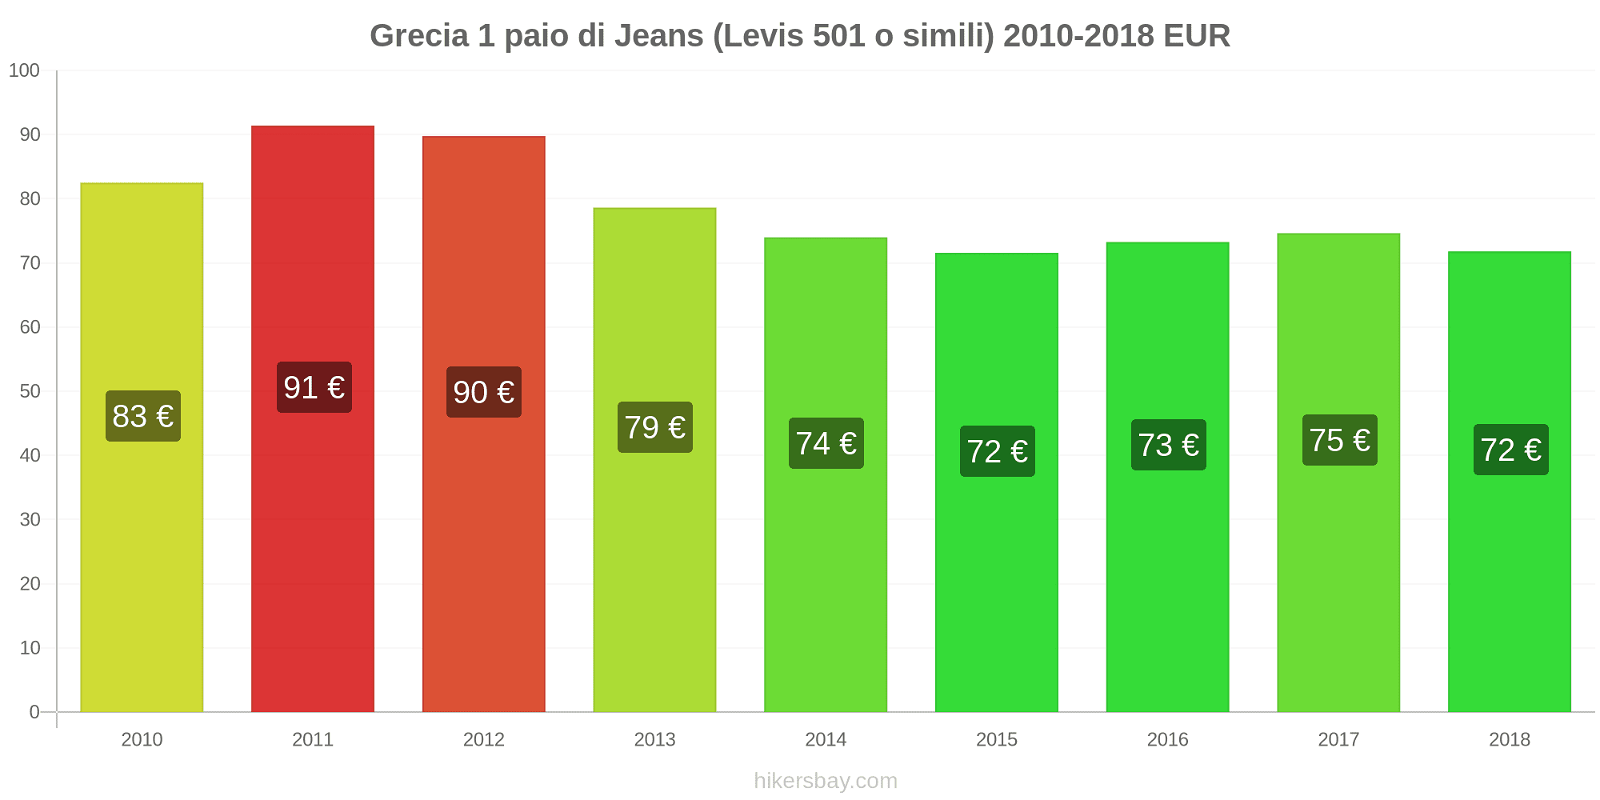 Grecia cambi di prezzo 1 paio di jeans (Levis 501 o simili) hikersbay.com